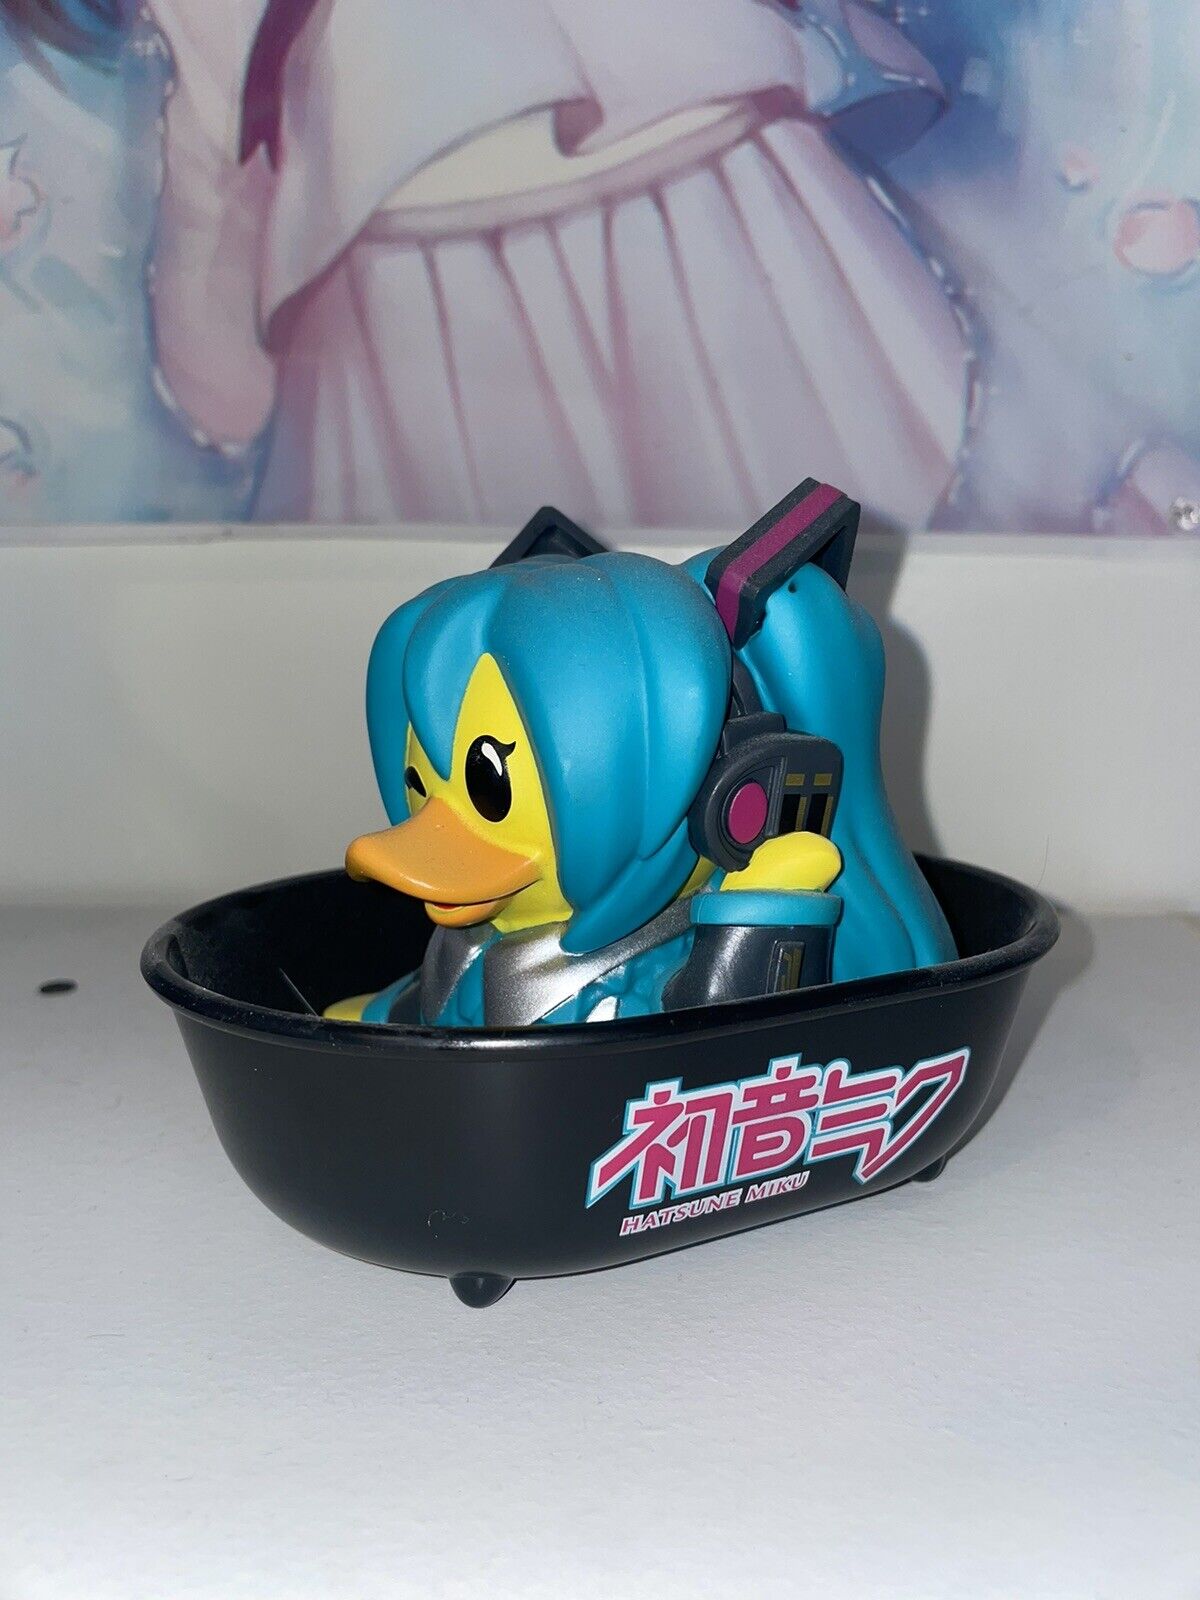 Hatsune Miku Tubbz Rubber Duck Figure Limited Edition Rare (no box)